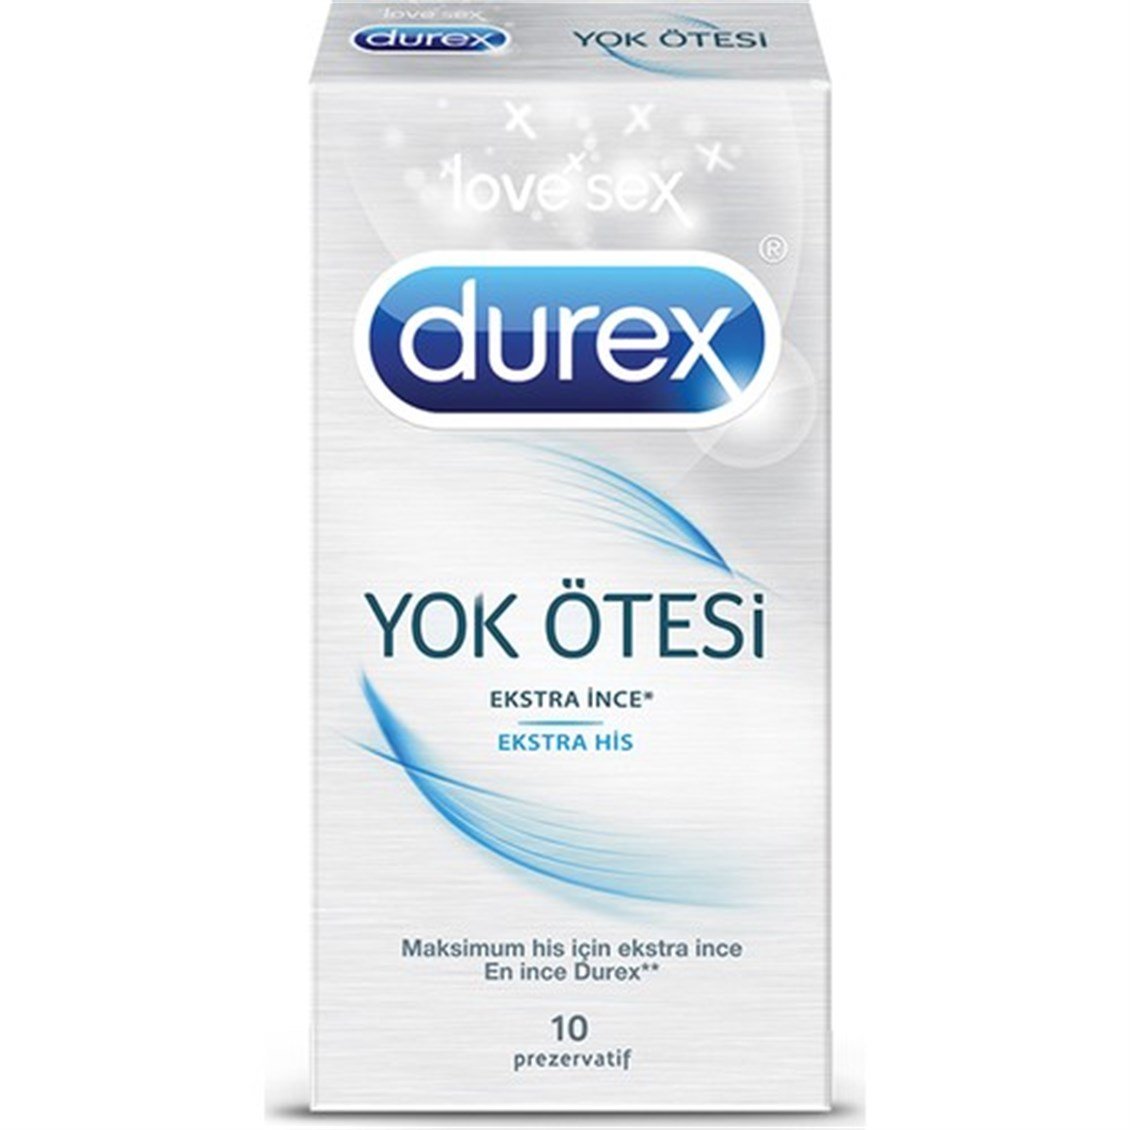 Durex Yok Ötesi Ekstra Zevk Prezervatif 10'Lu - Onur Market